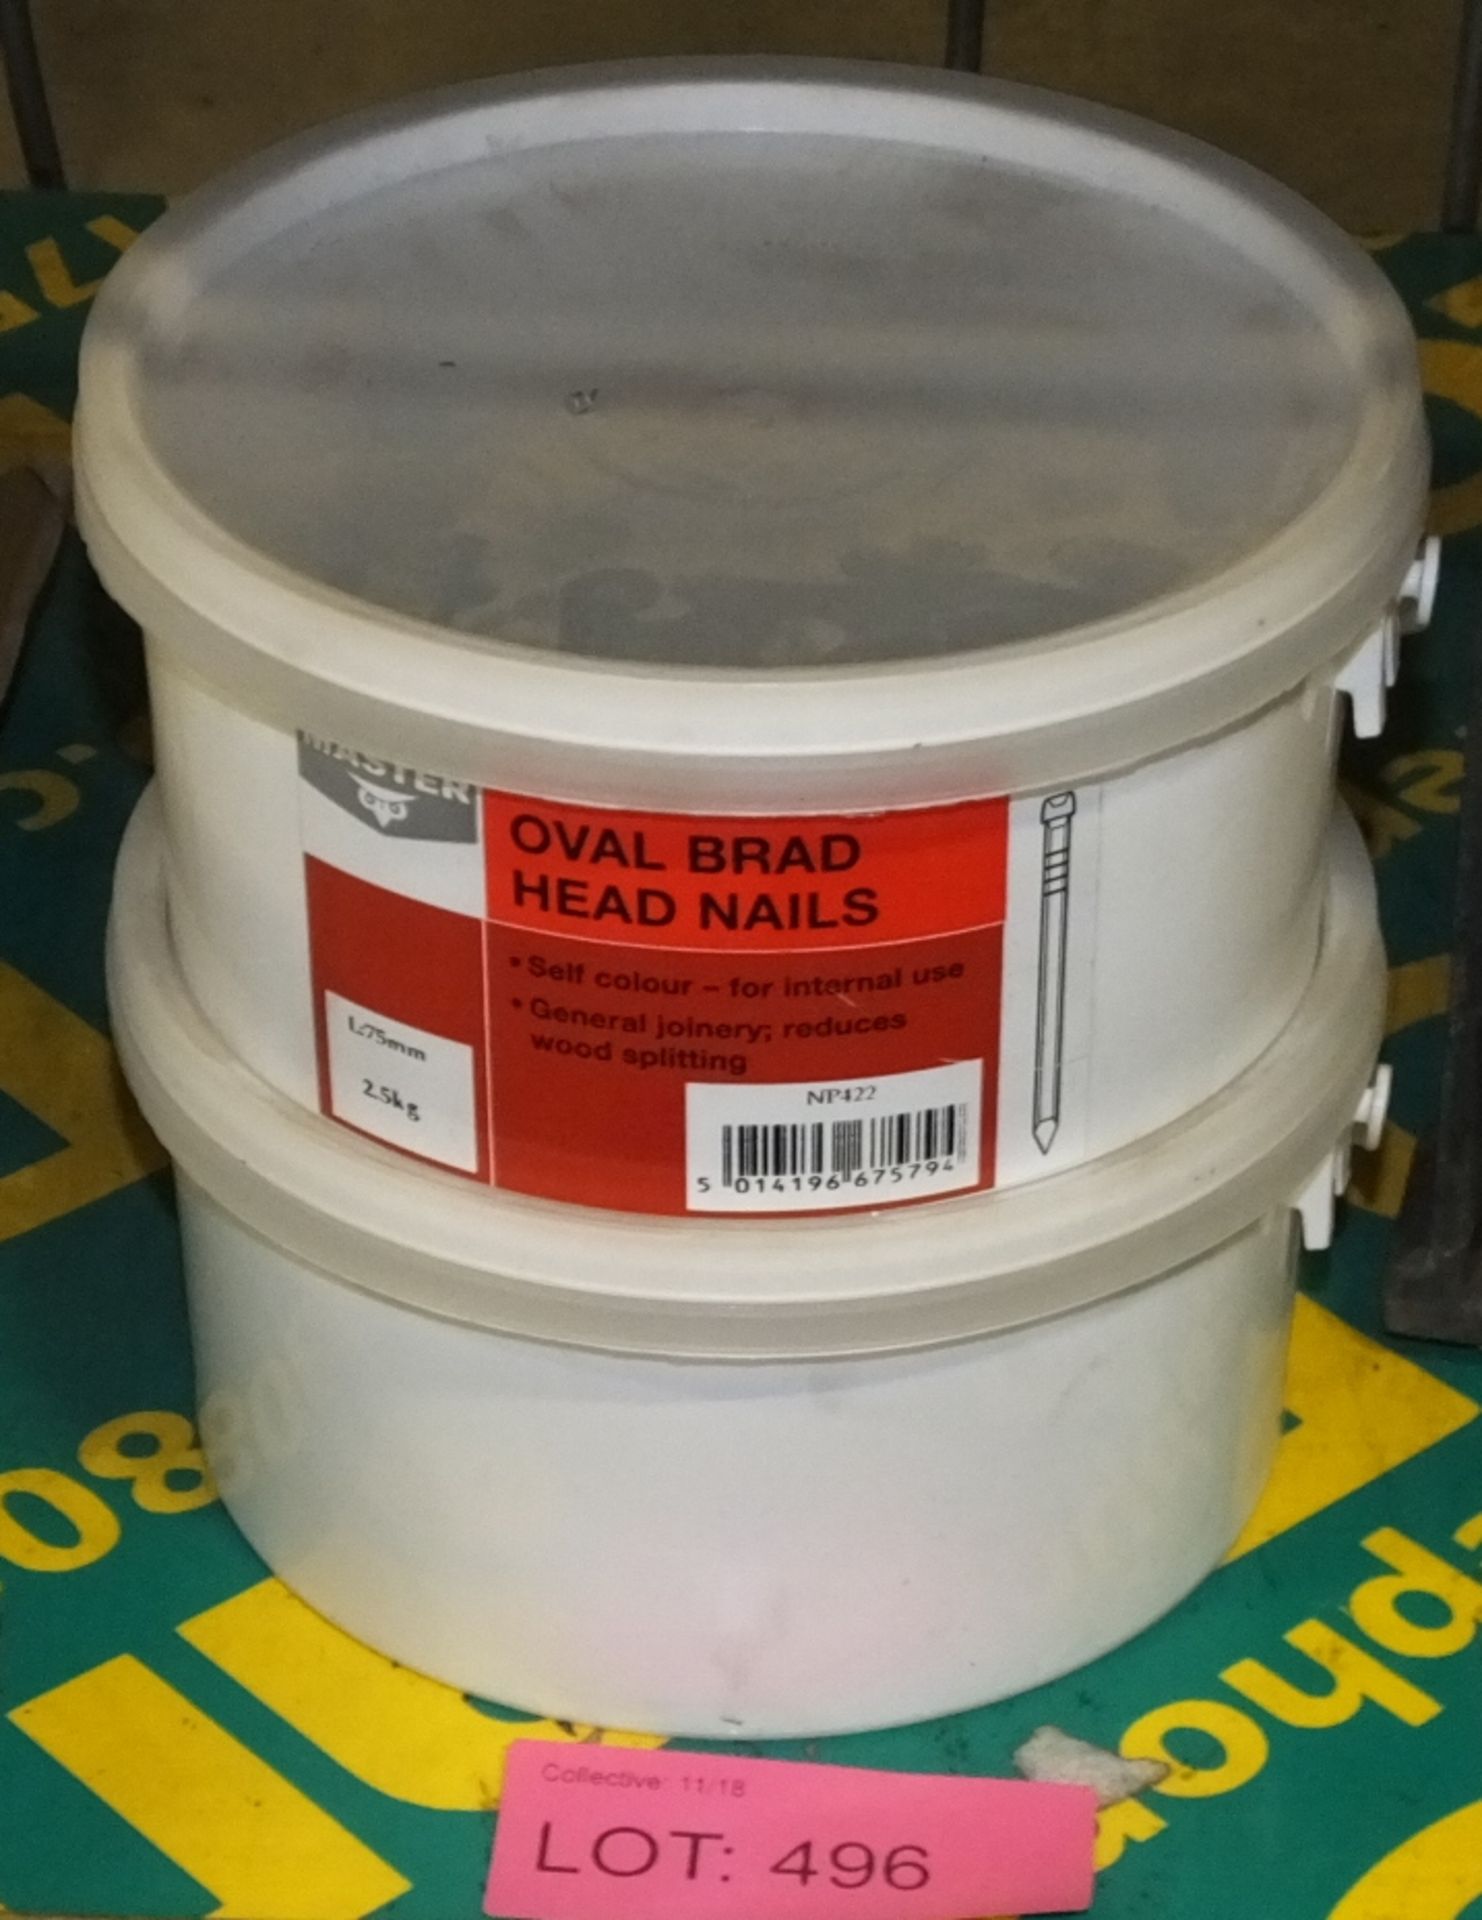 2x 2.5kg Oval Brad Head Nails